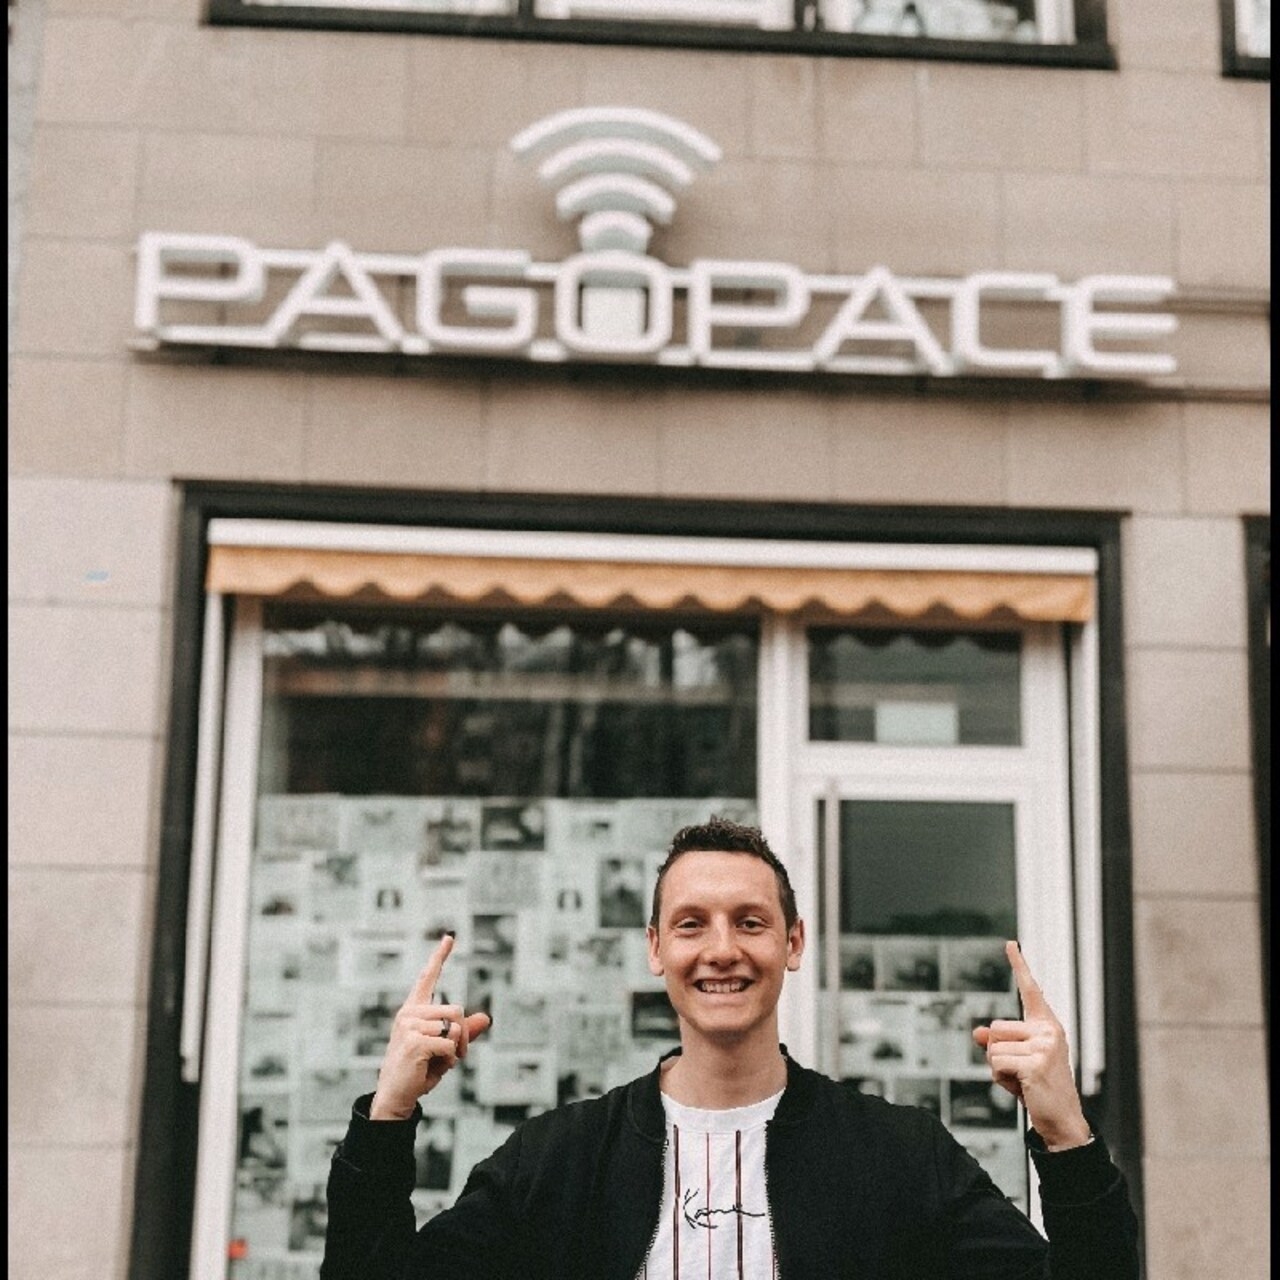 Mobilie maksājumi: Lukass Šmits ir Ķelnē Ziemeļreinas-Vestfālenes štatā bāzētā uzņēmuma PAGOPACE GmbH izpilddirektors